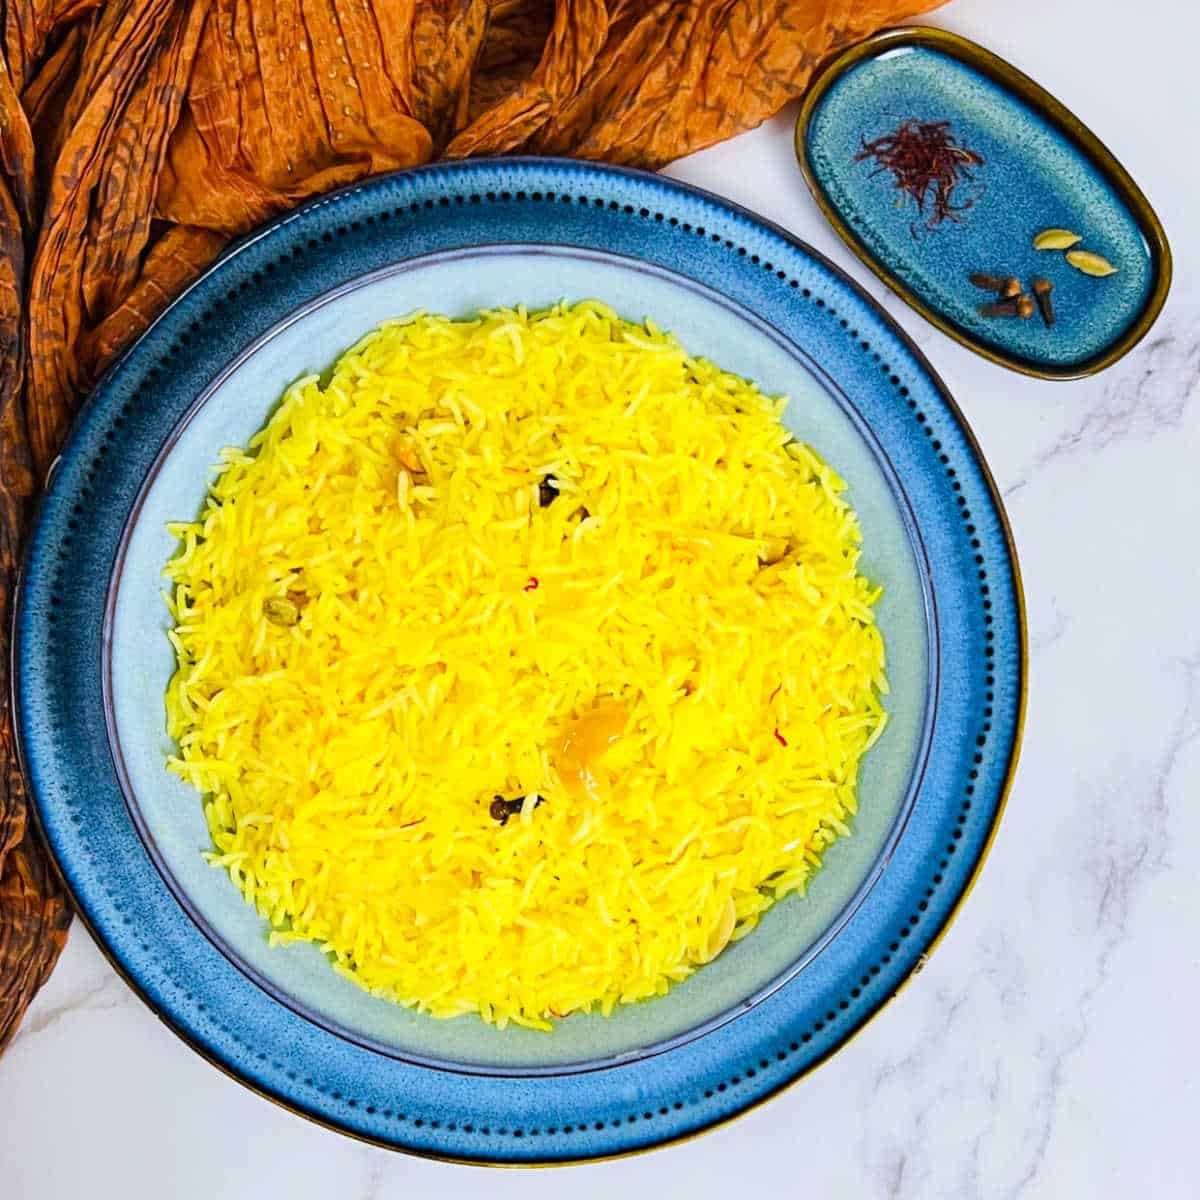 Instant Pot saffron rice placed in a blue bowl.